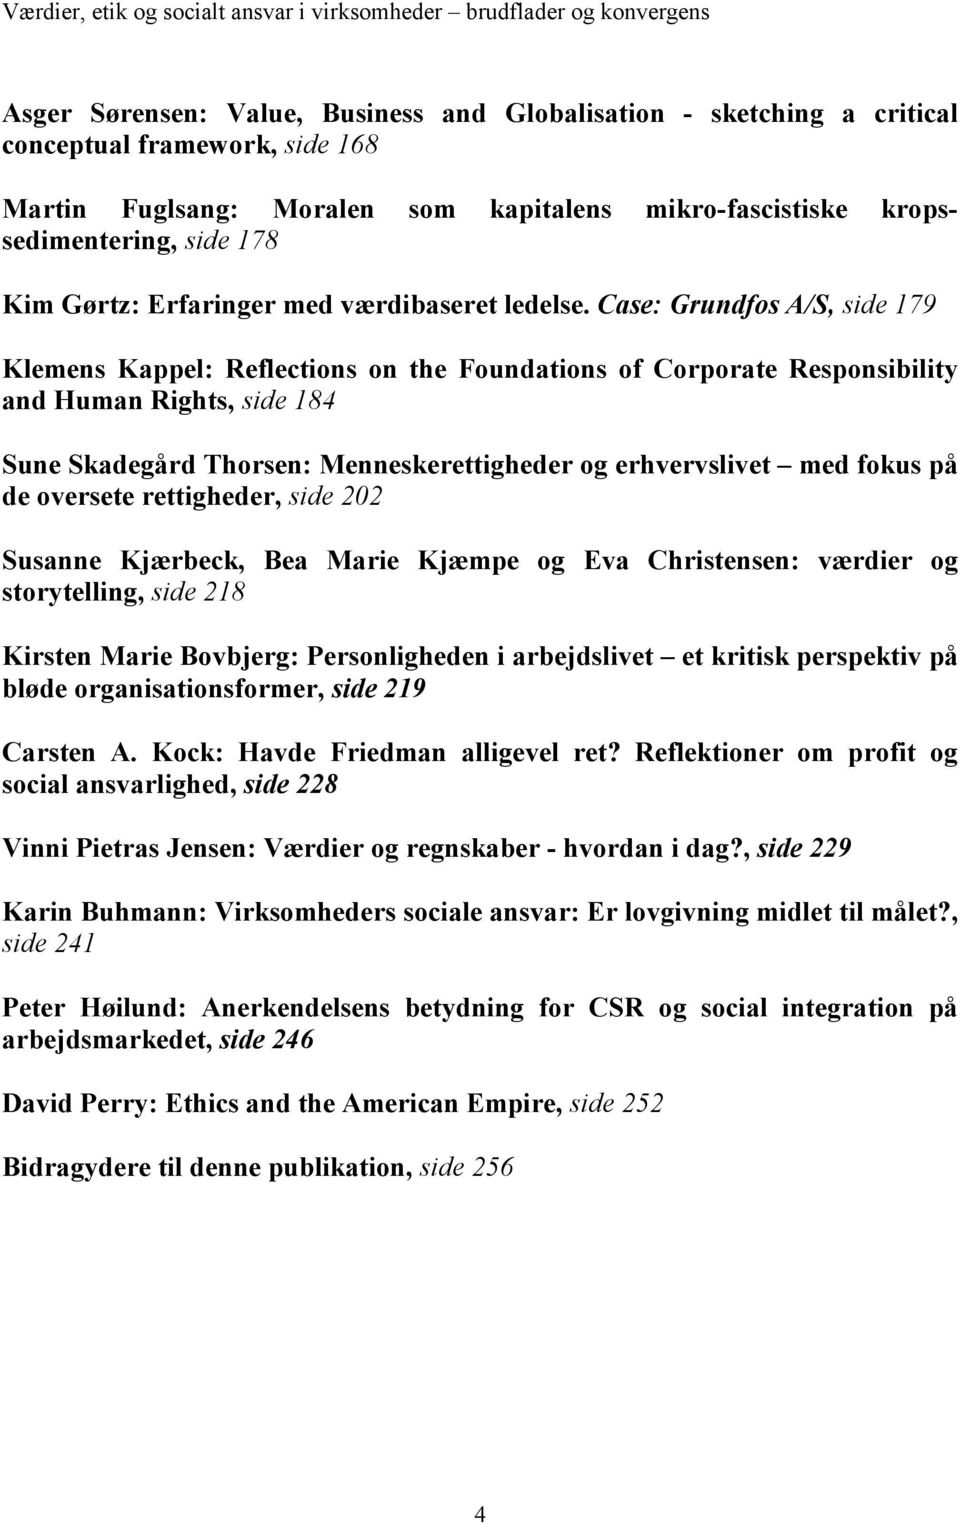 Case: Grundfos A/S, side 179 Klemens Kappel: Reflections on the Foundations of Corporate Responsibility and Human Rights, side 184 Sune Skadegård Thorsen: Menneskerettigheder og erhvervslivet med